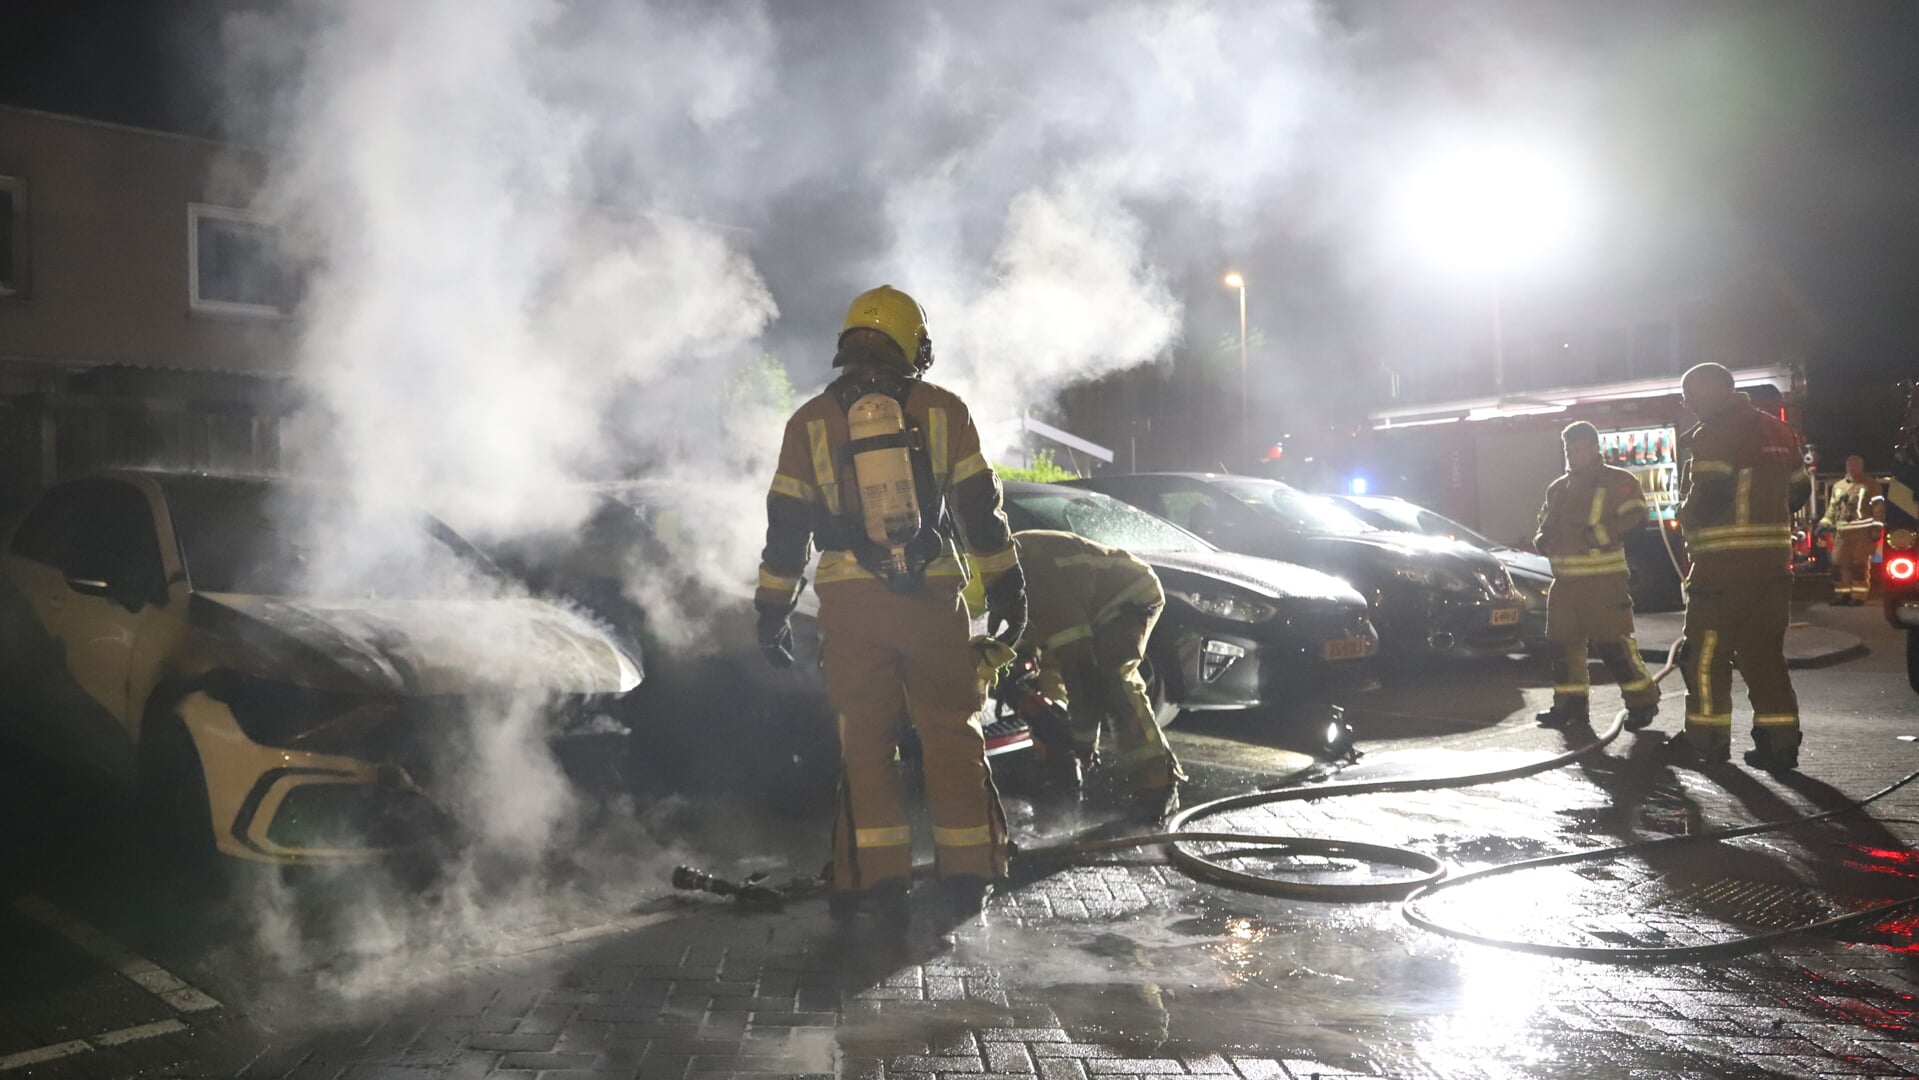 Door de felle brand vatte een auto die er naast stond ook vlam. Foto: Spa-Media